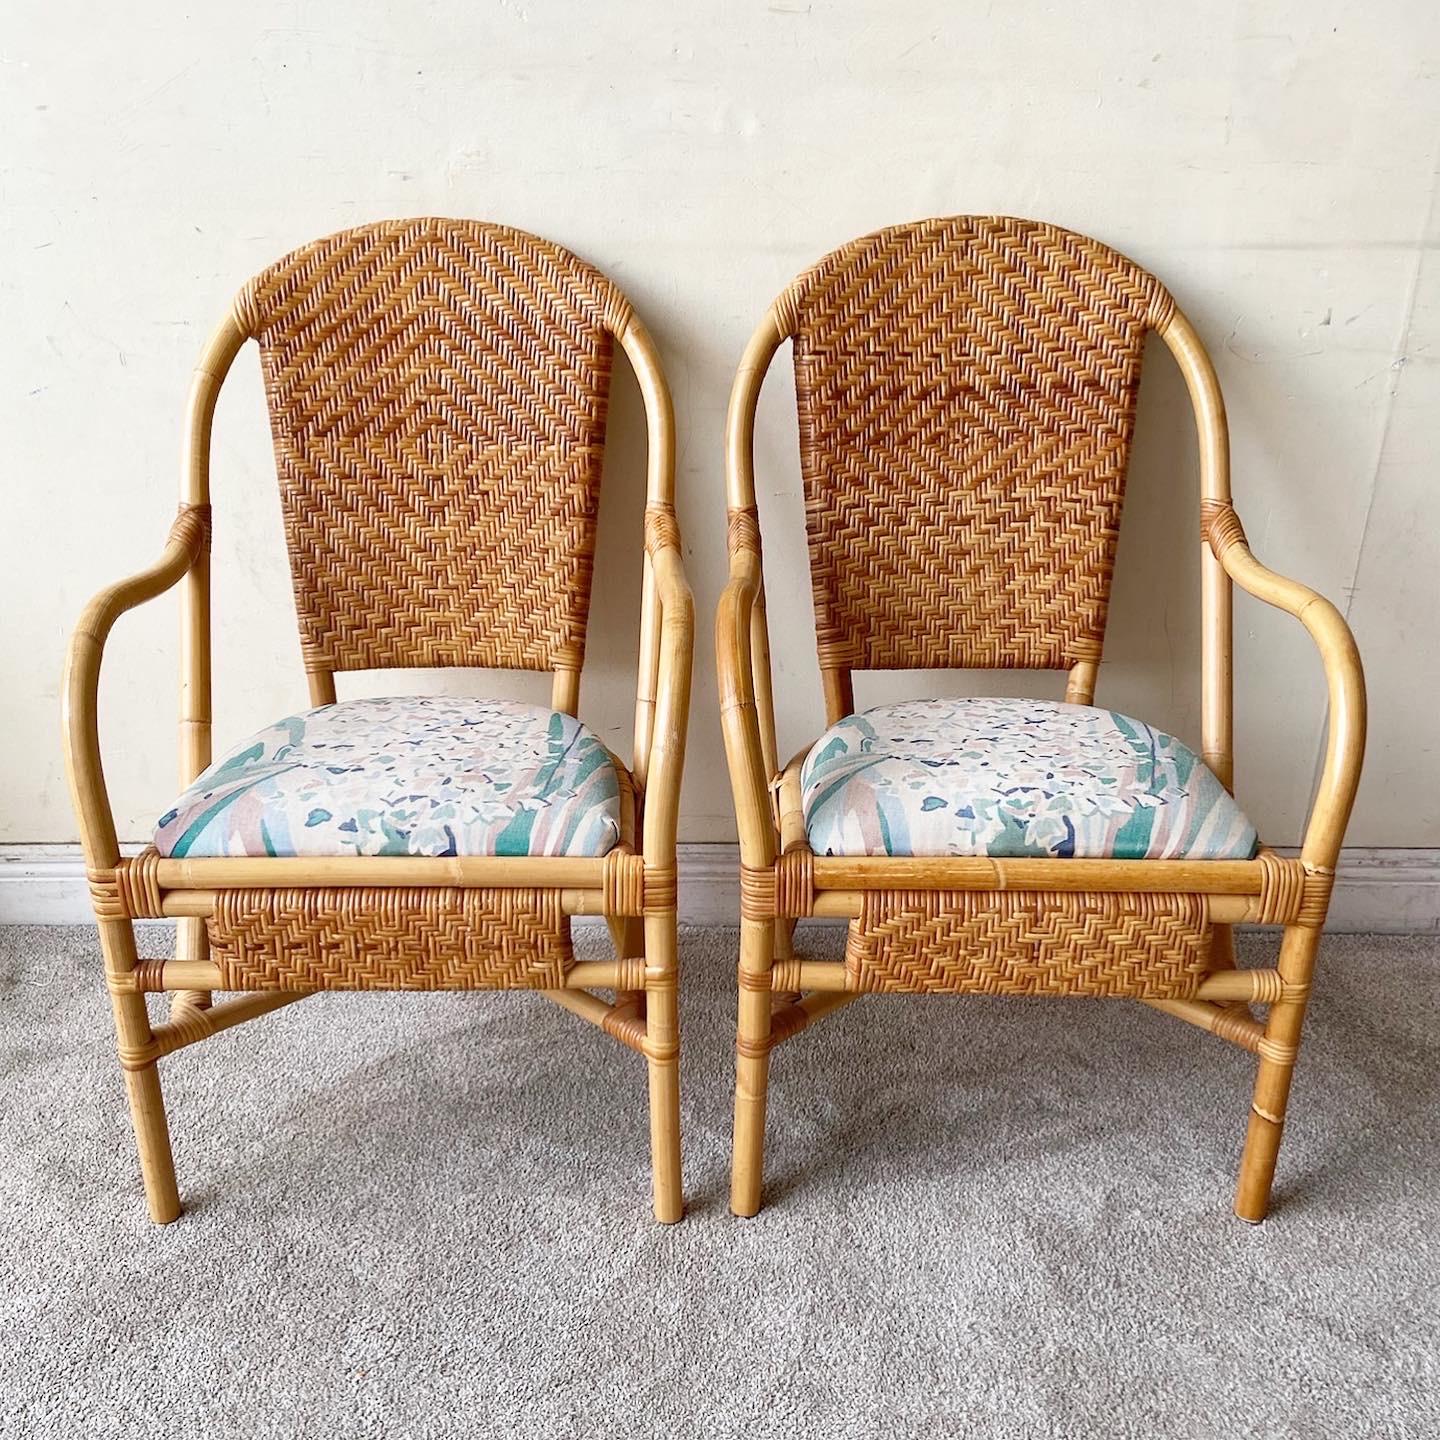 Superbe paire de fauteuils vintage bohème en rotin et osier de bambou. Chacun d'entre eux comporte un coussin de siège en tissu bleu, blanc et rose, ainsi qu'un oreiller assorti. 